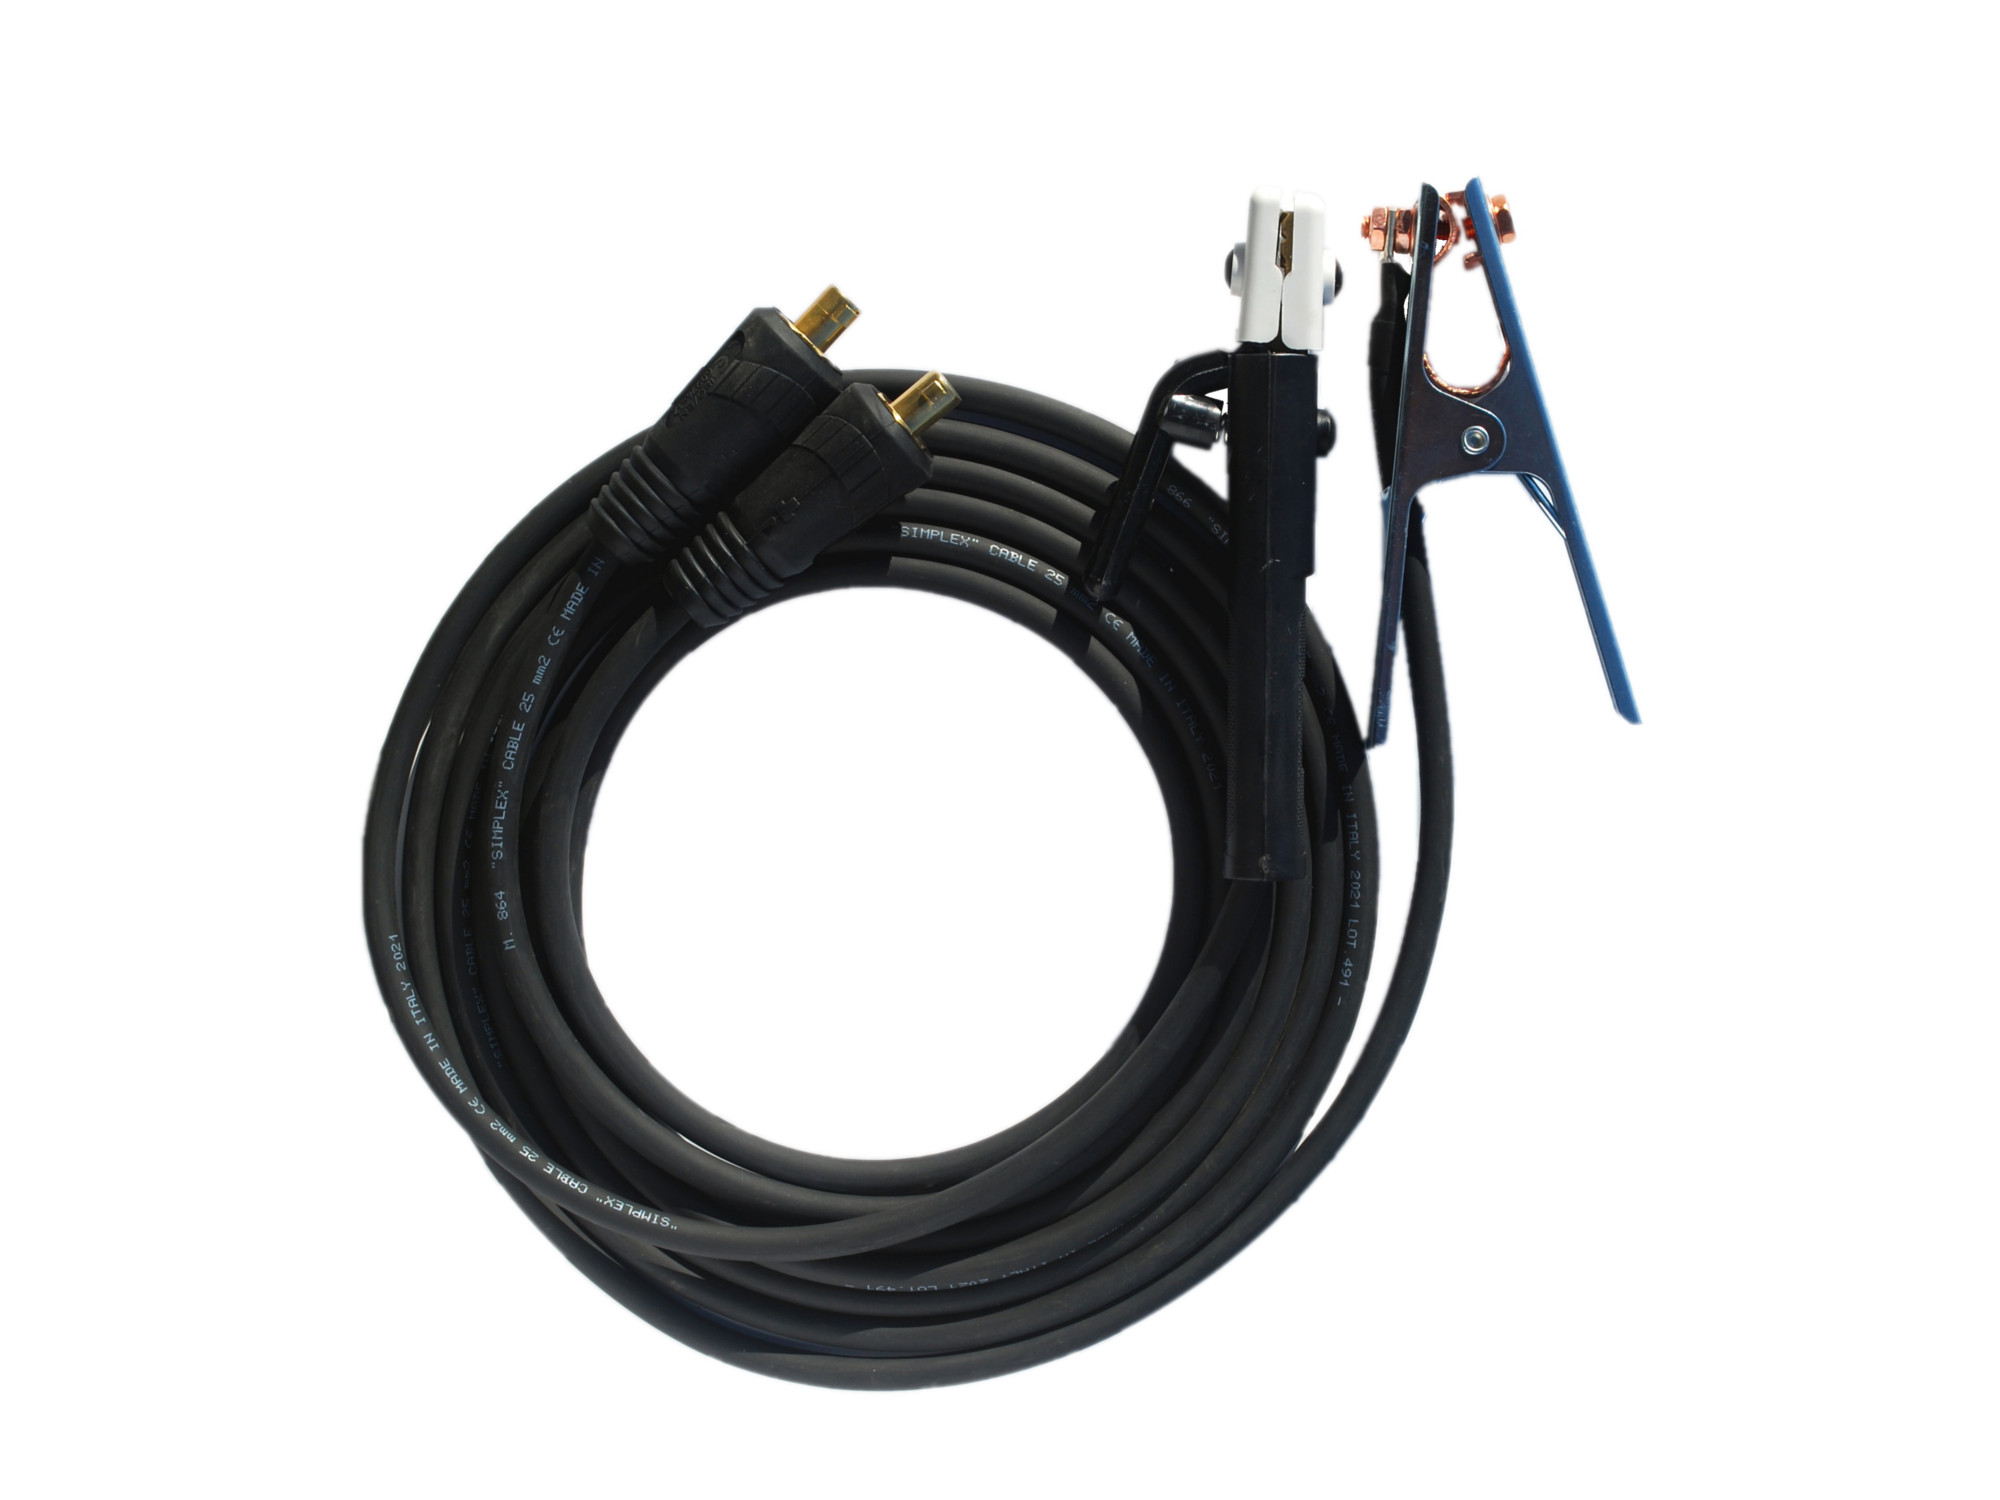 Kabely pro svařování elektrodou